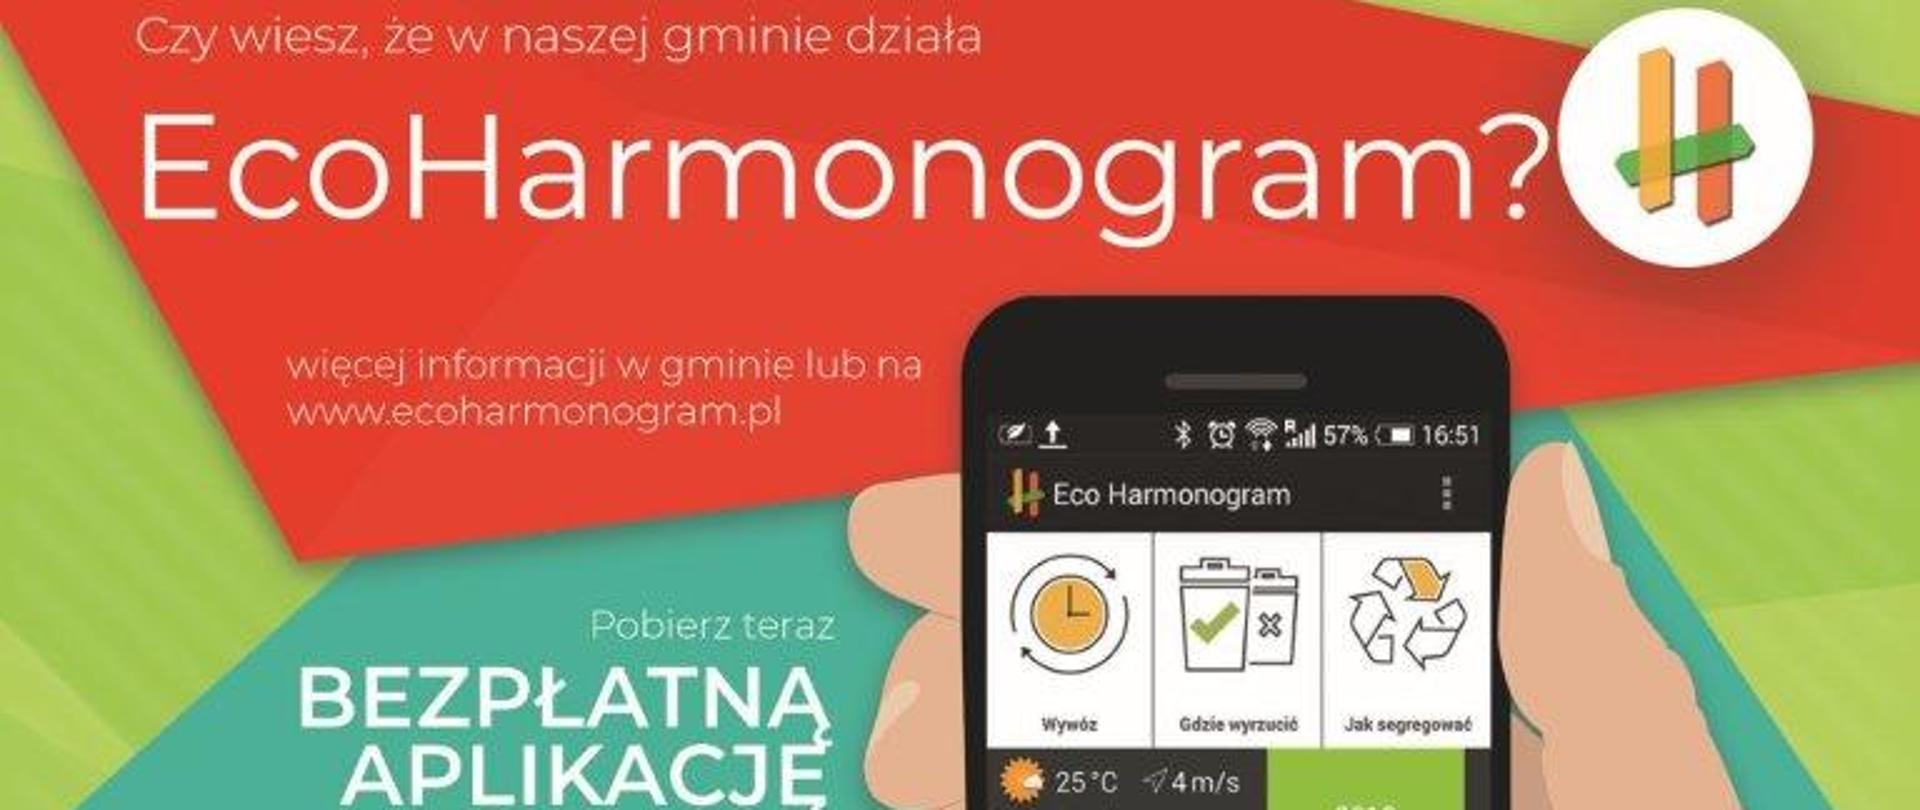 Ulotka promująca bezpłatną aplikacje Eco Harmonogram